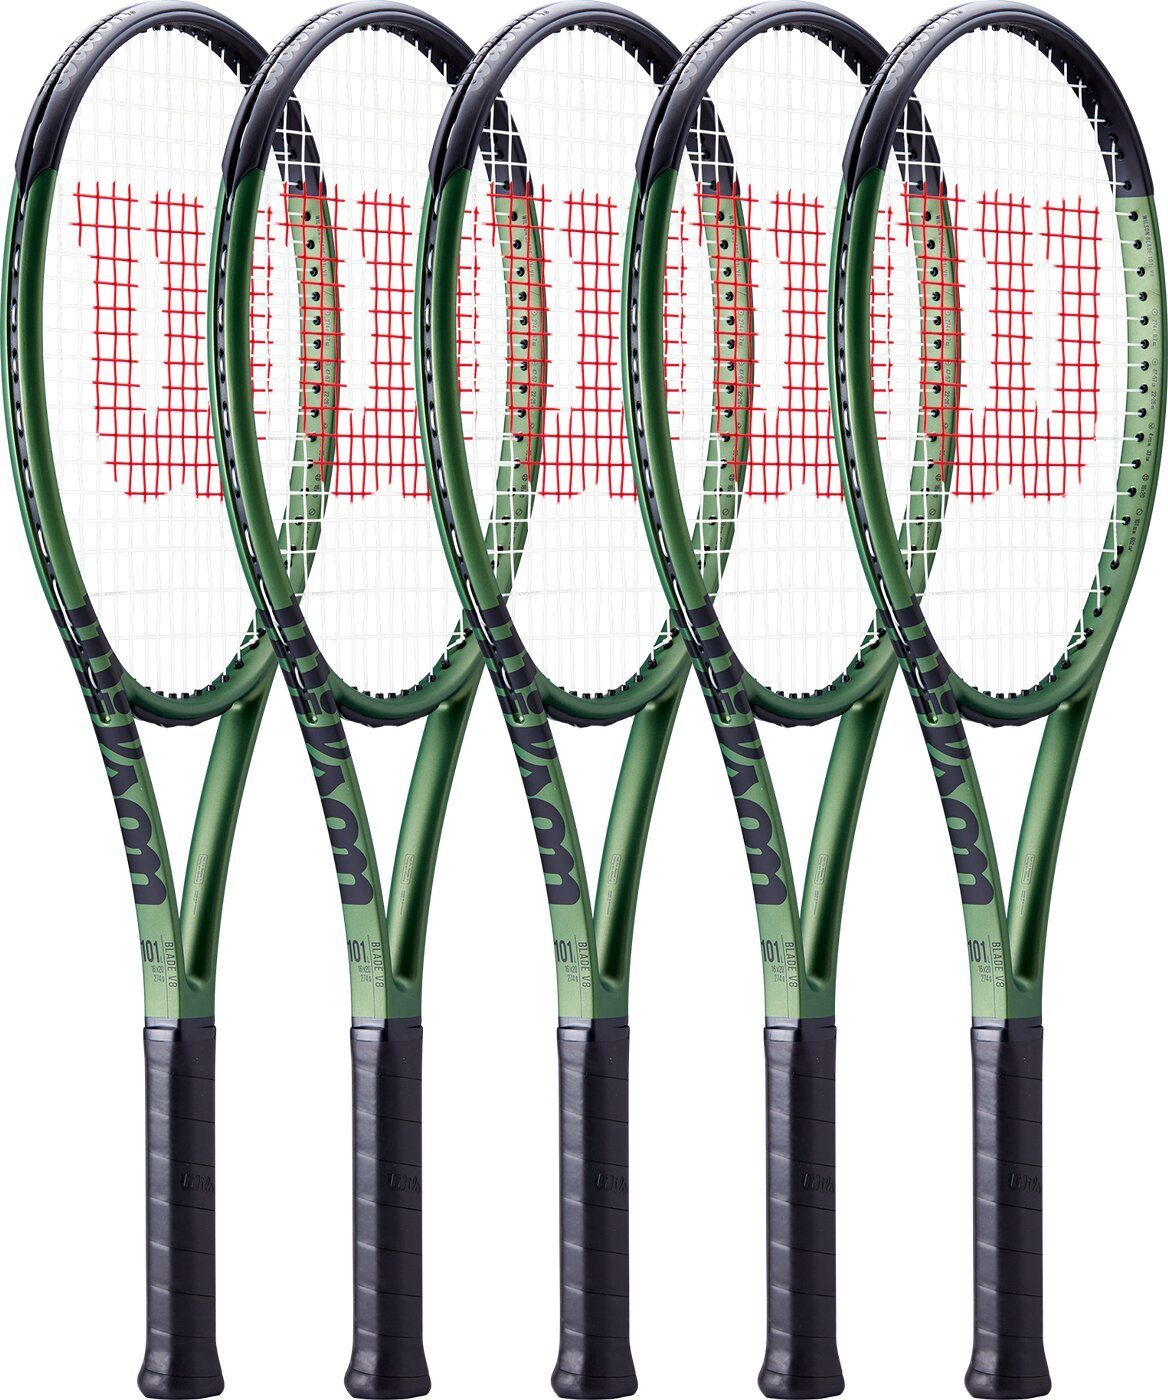 Wilson Tennisschläger CHARCOAL/GREEN RKT BLADE 101L V8.0